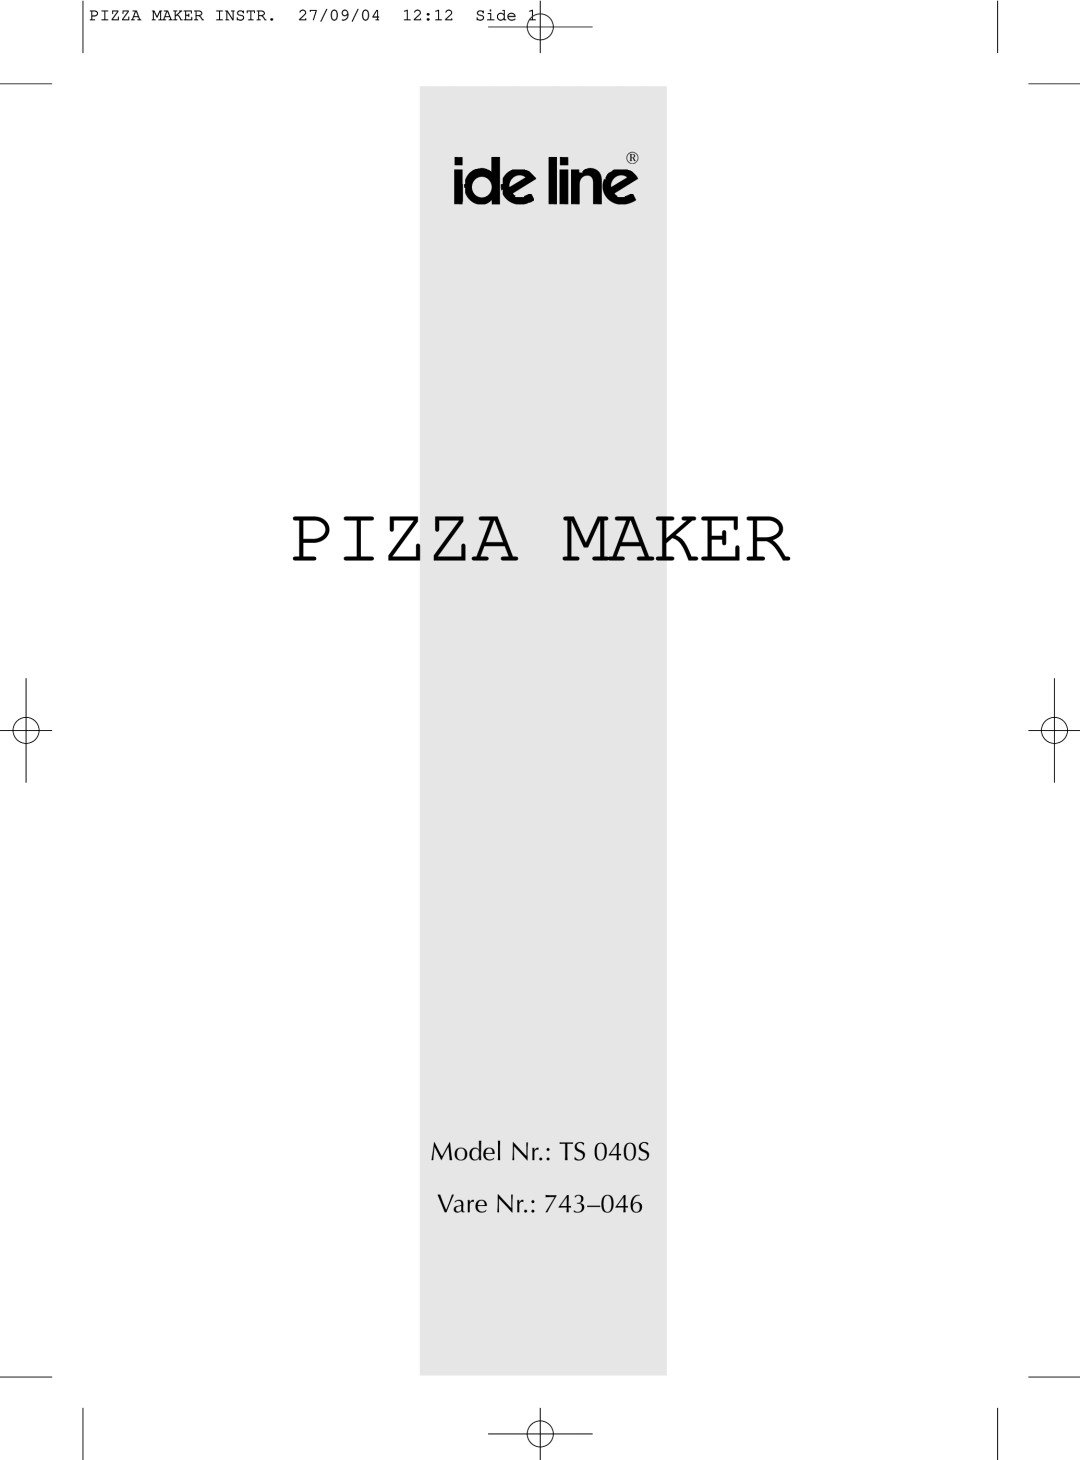 Melissa manual Pizza Maker, Model Nr.: TS 040S Vare Nr.: 743–046, PIZZA MAKER INSTR. 27/09/04 12:12 Side 